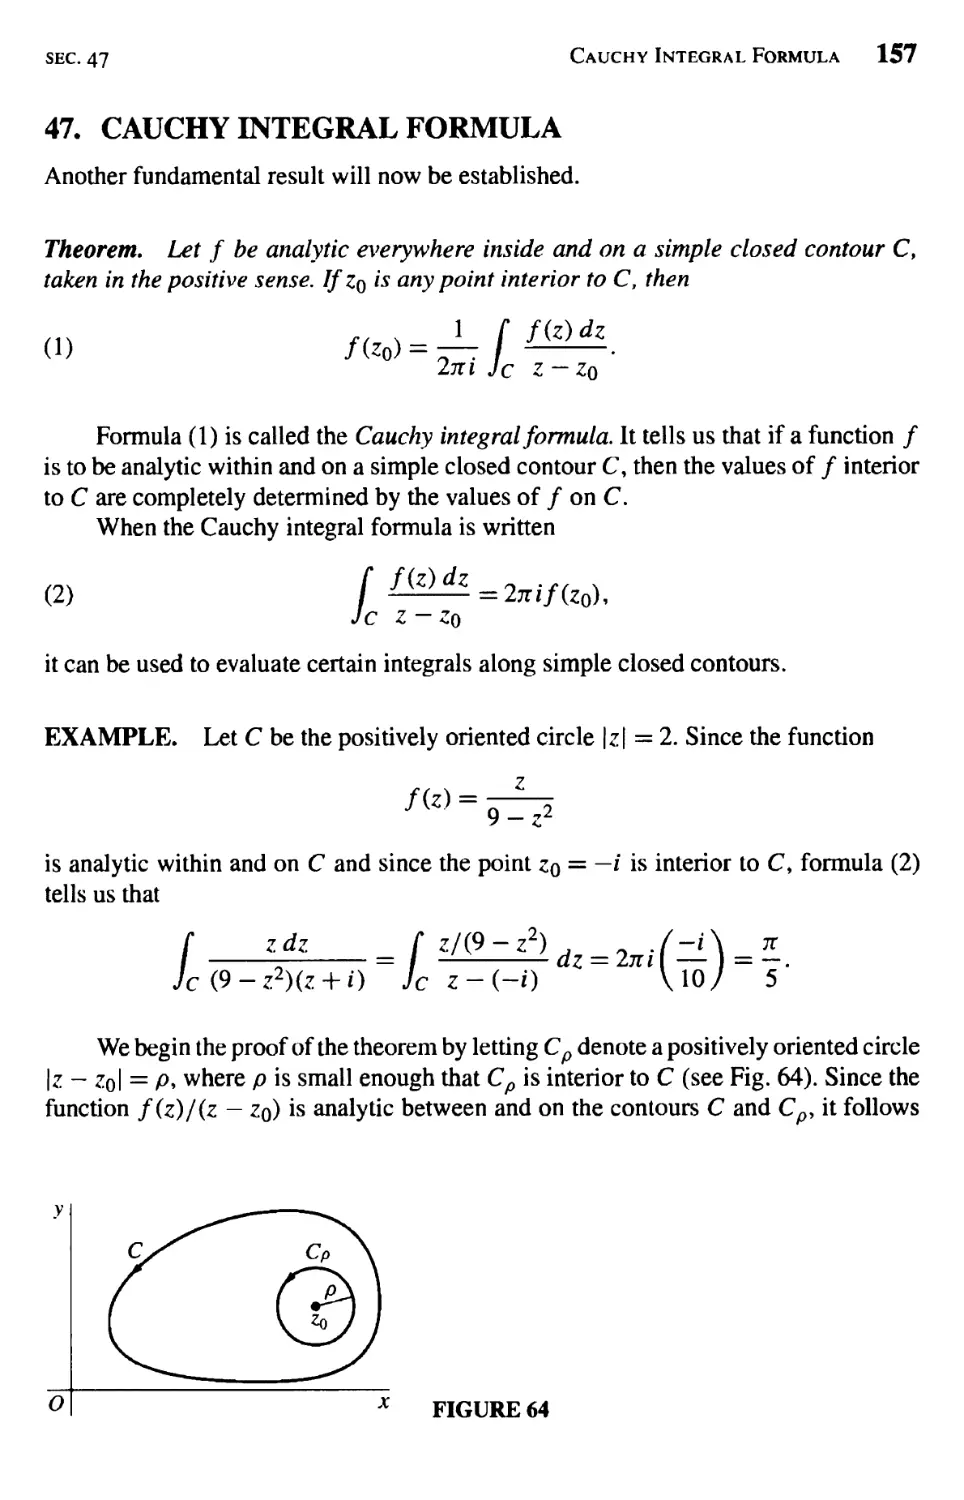 Cauchy Integral Formula